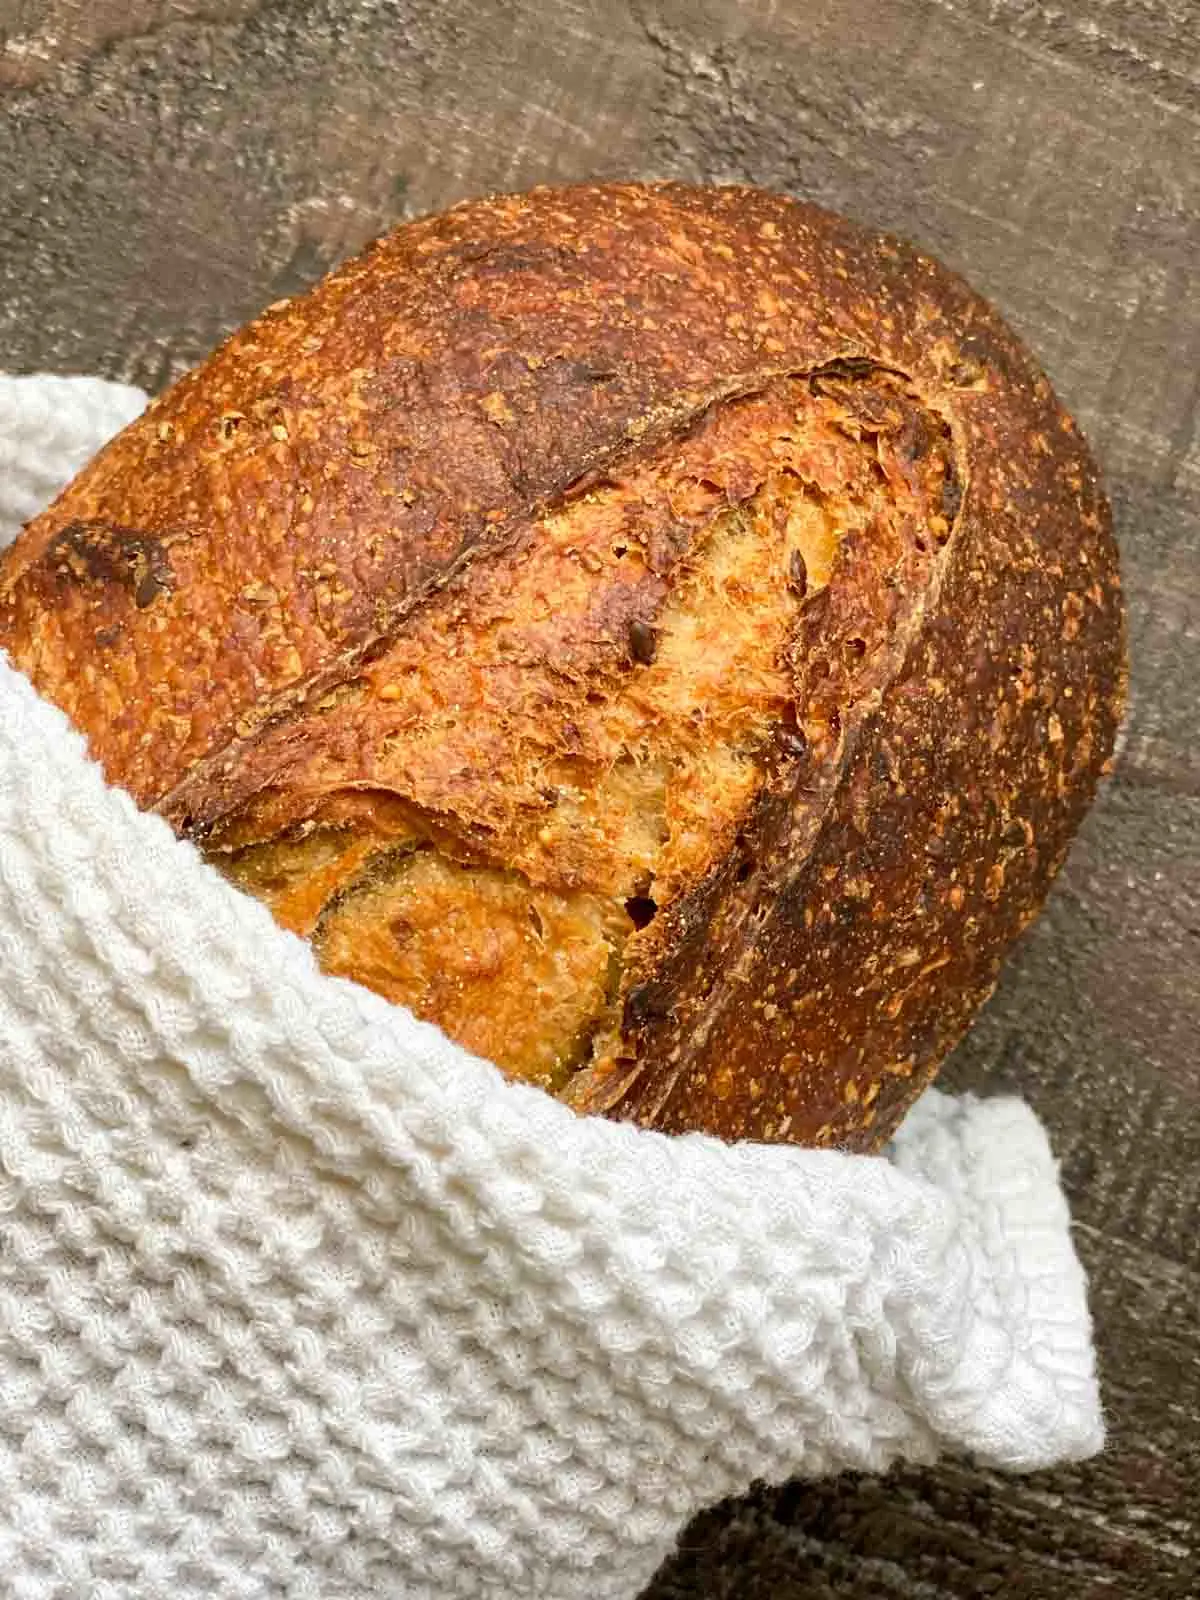 Wildgrain loaf of 7-grain sourdough bread after baking, wrapped in tea towel